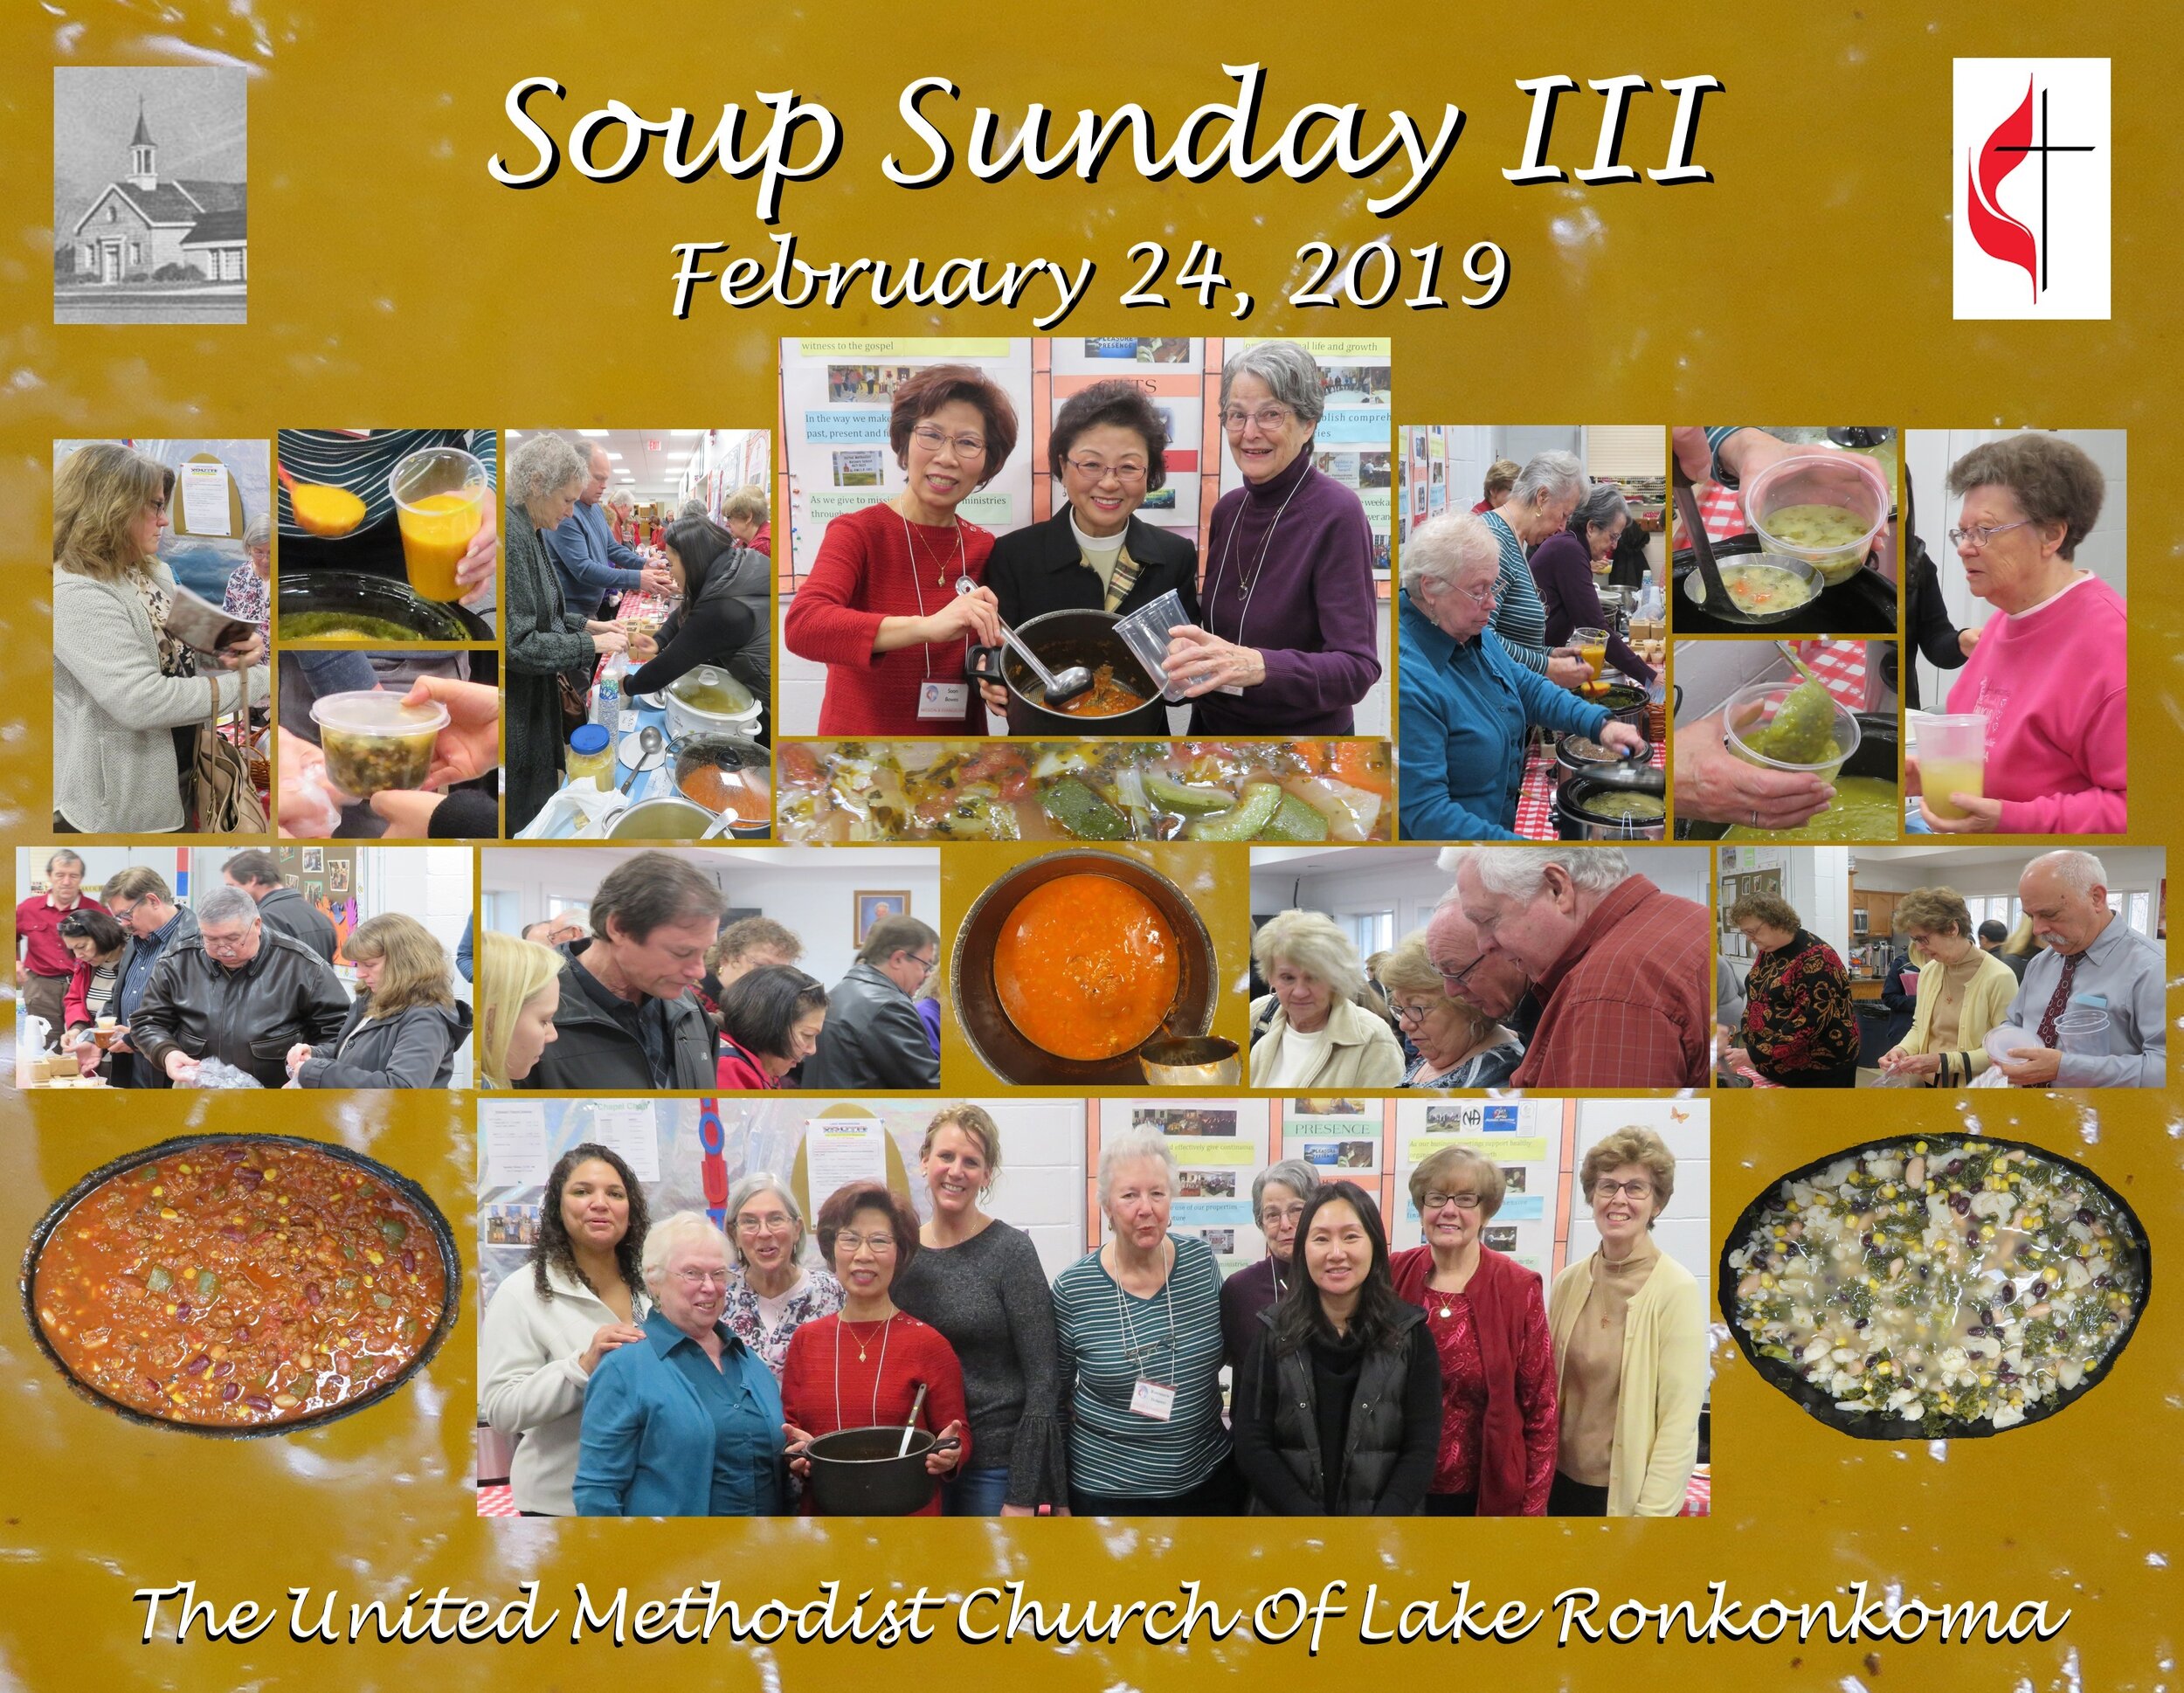 03-02-24-2019 Soup Sunday III.jpg